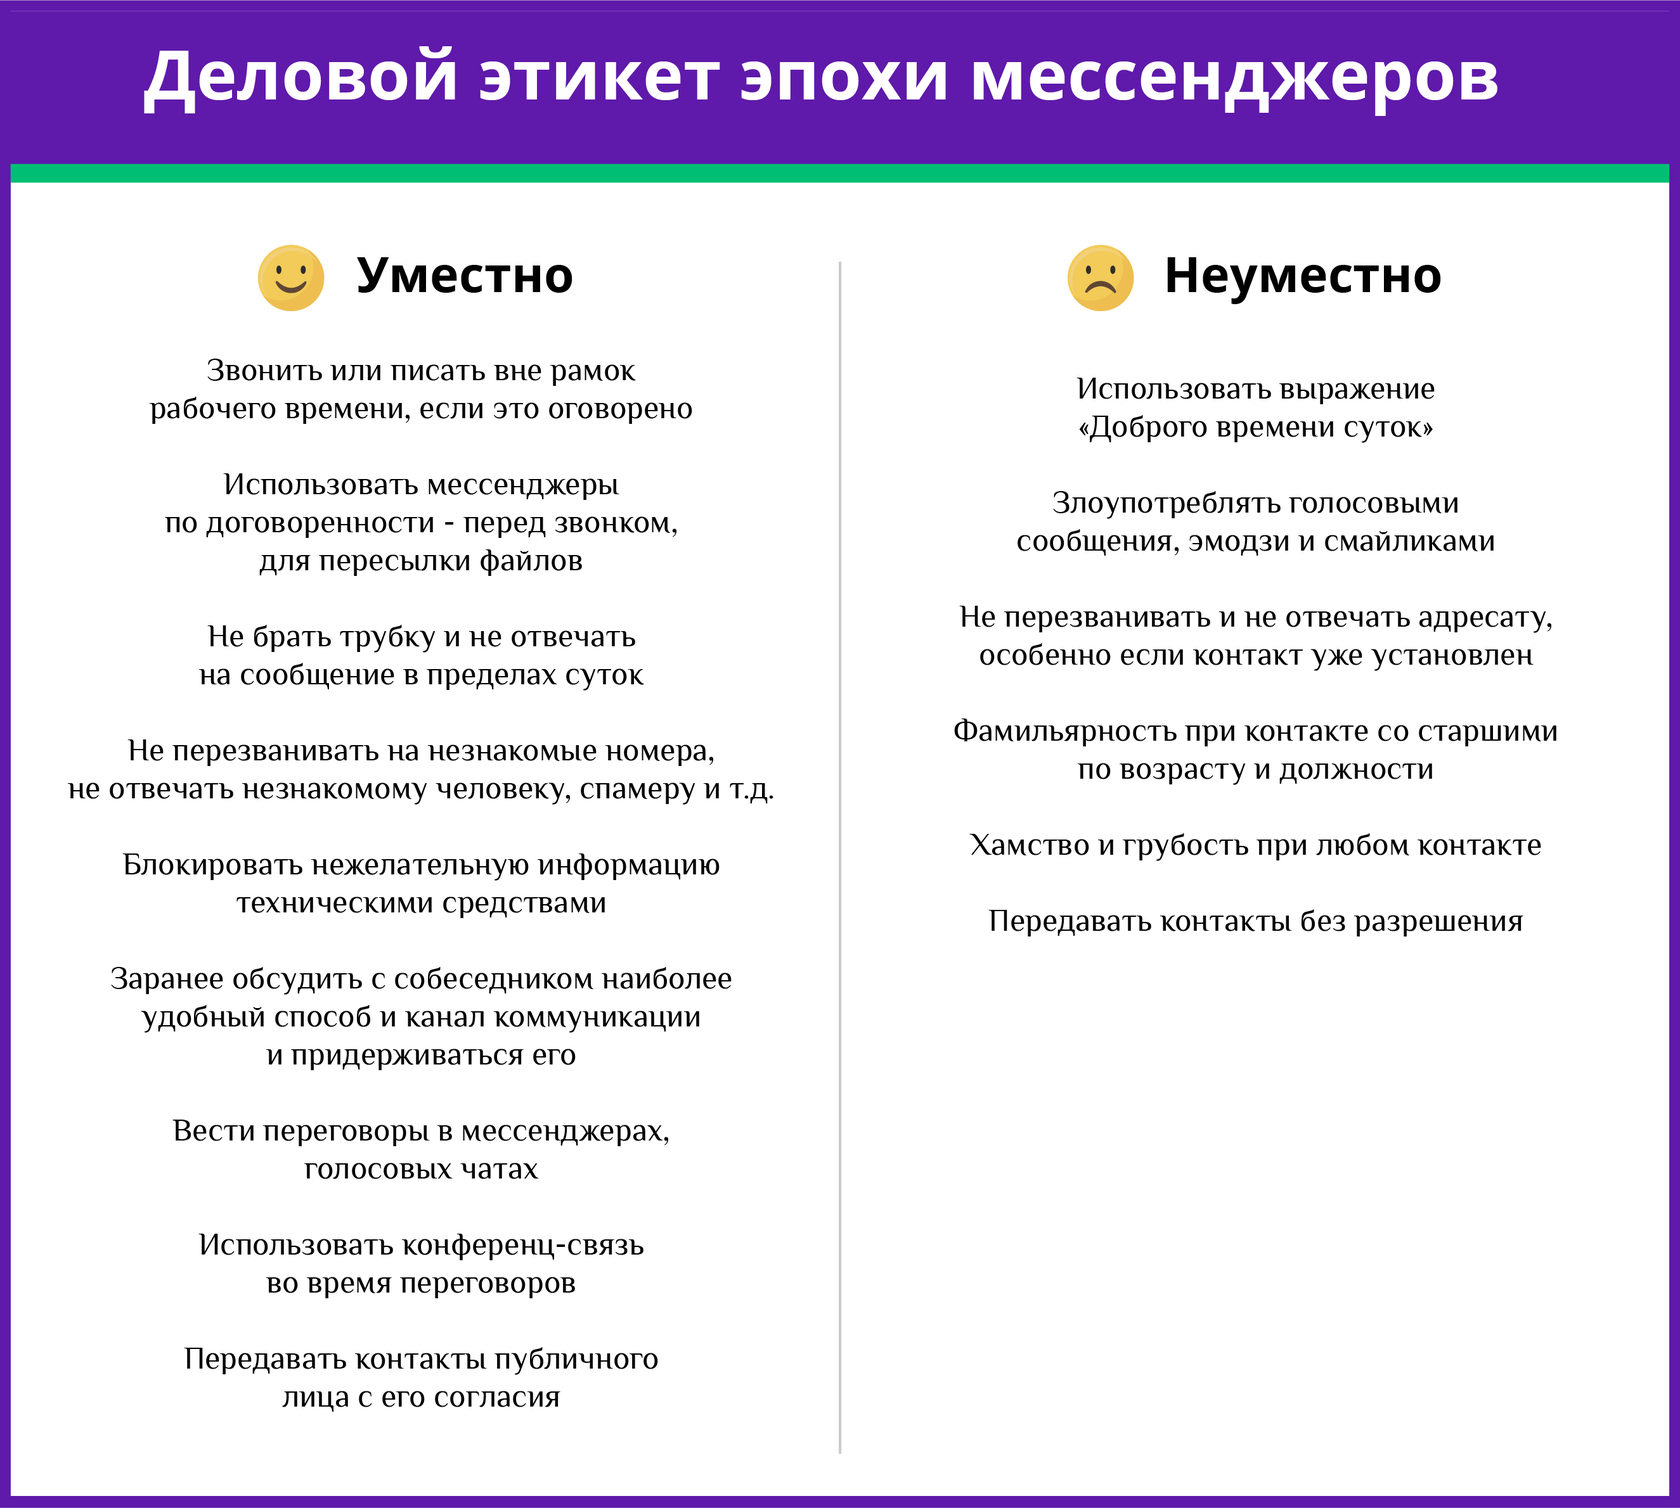 Деловой этикет эпохи мессенджеров. Инфографика Фонтанки.ру и МегаФона